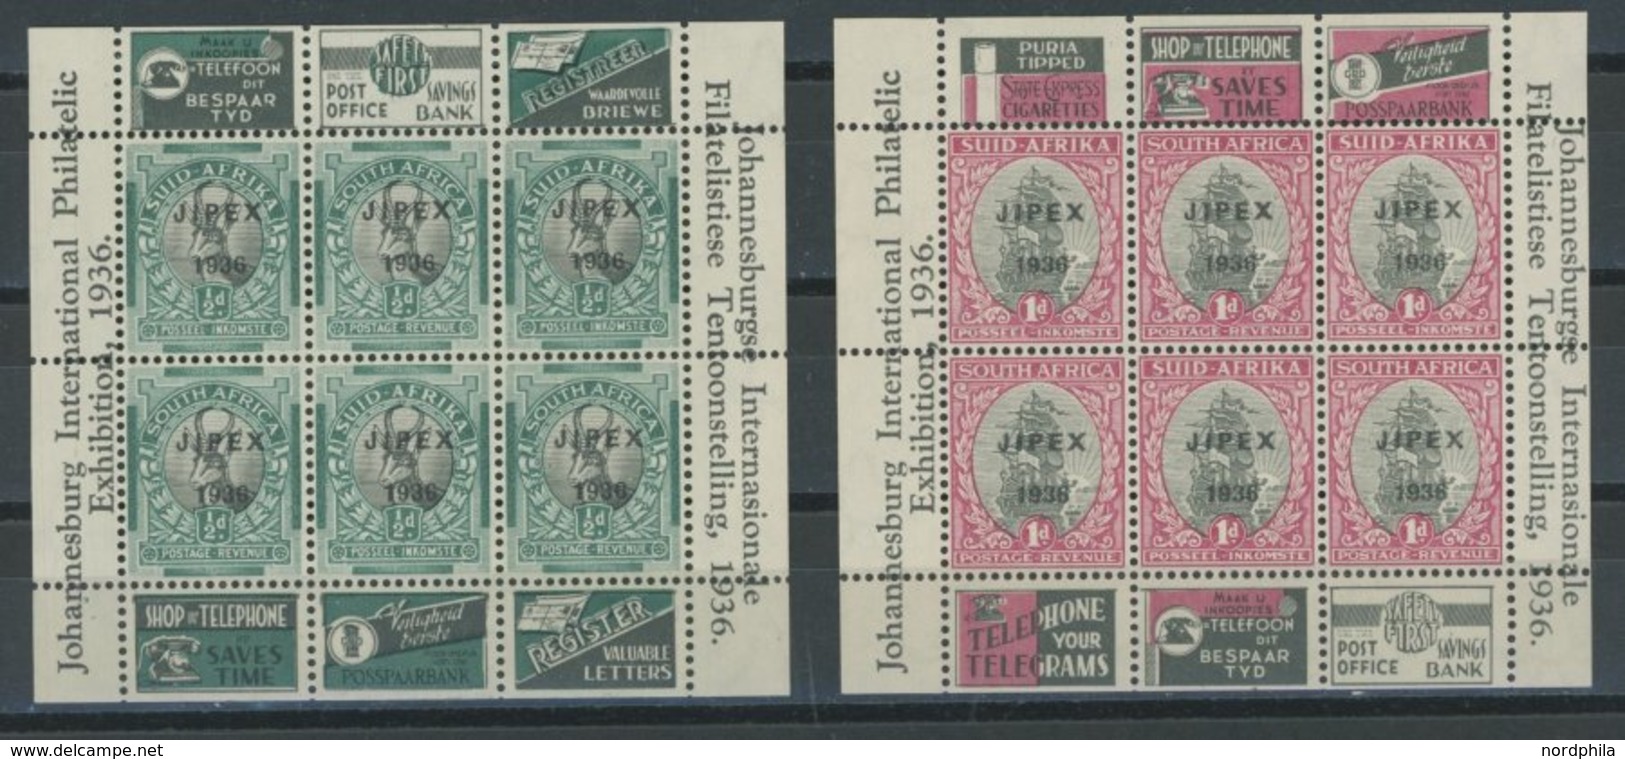 SÜDAFRIKA AB 1910 Bl. 1/2 **, 1936, Blockpaar JIPEX 1936, Postfrisch, Pracht - Blocchi & Foglietti